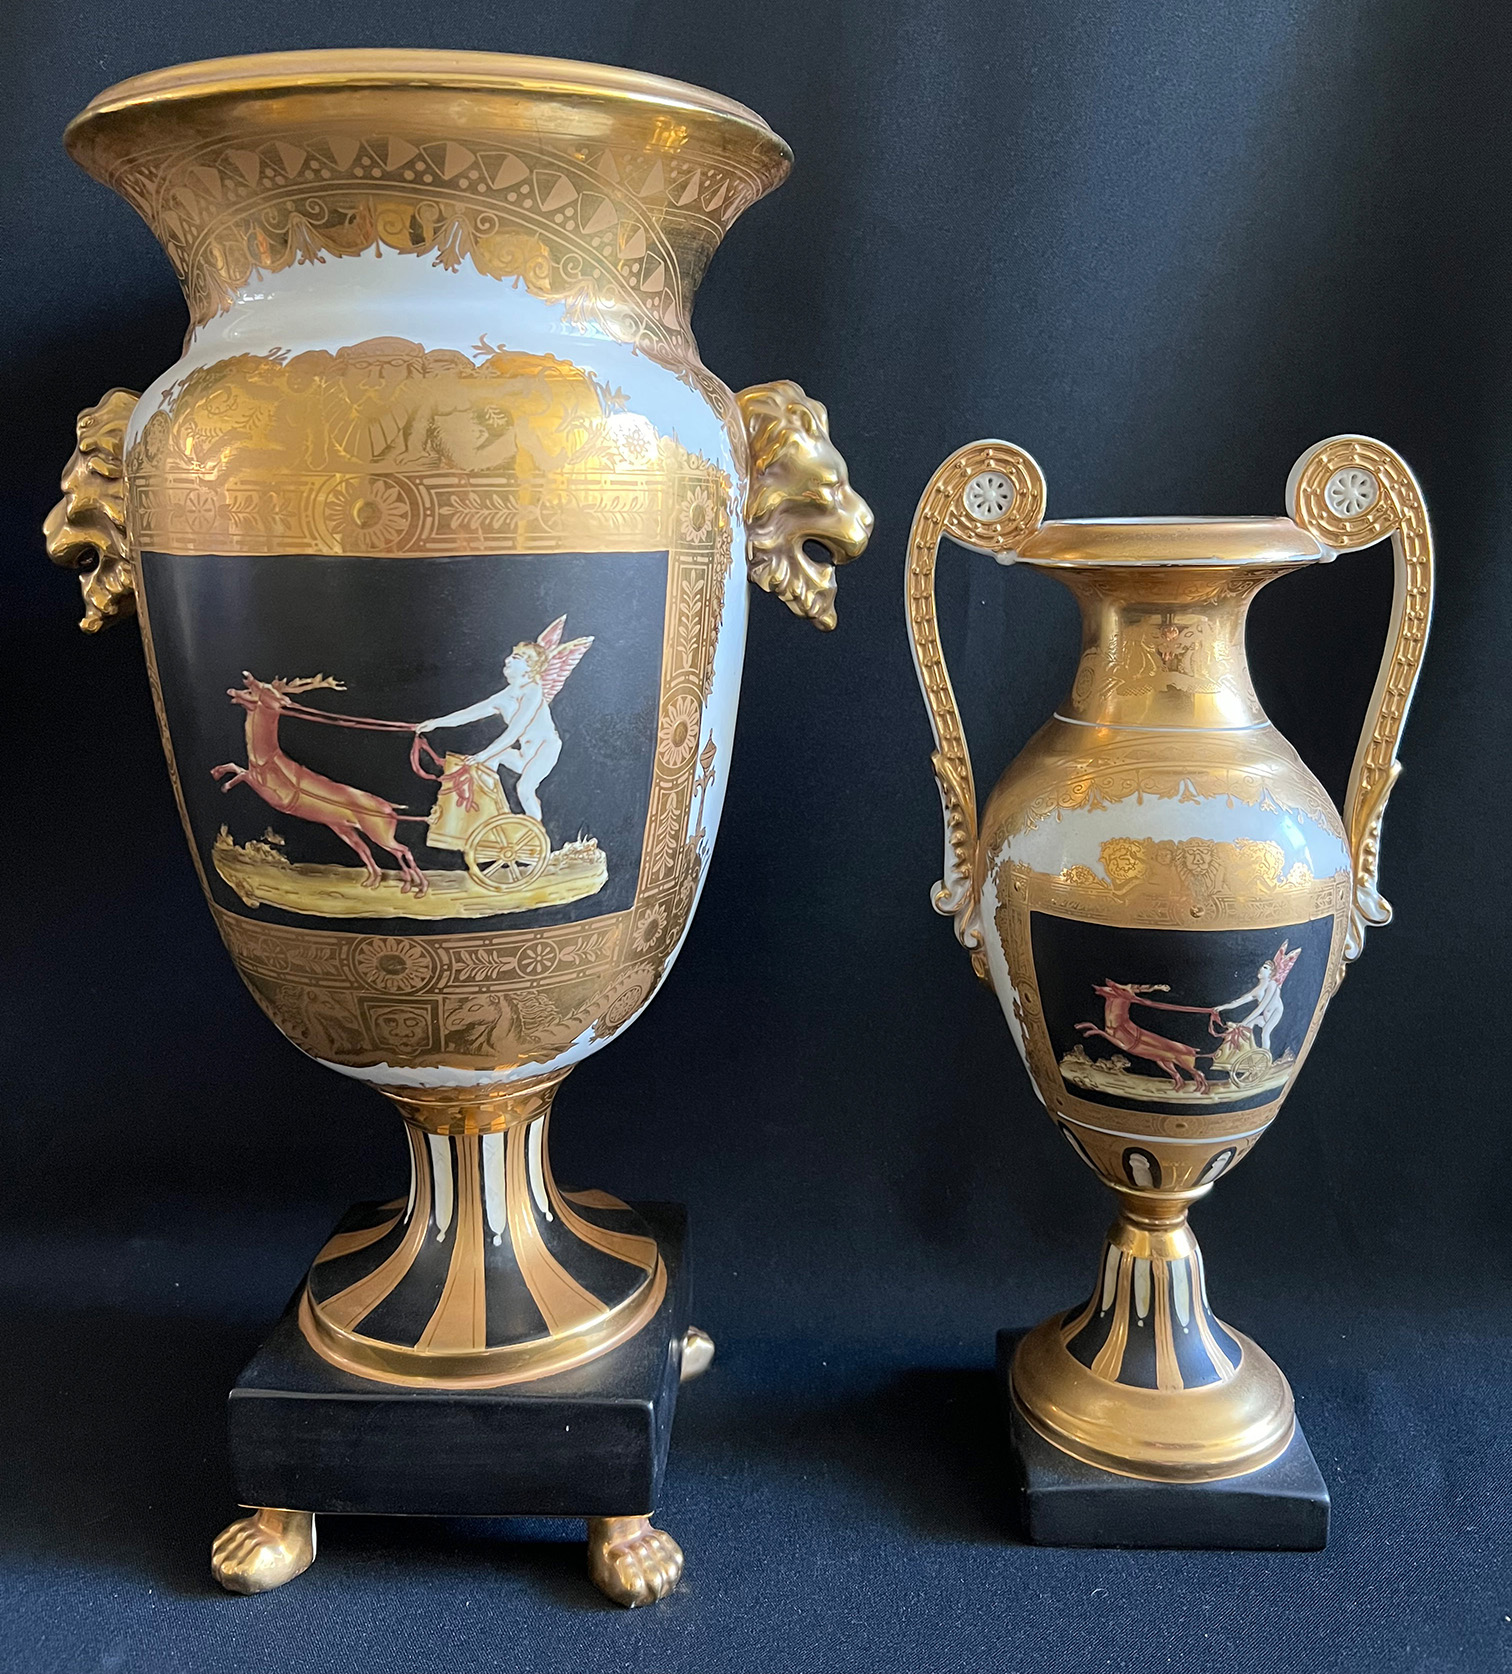 2 Prunkvasen in Form von griechischen Amphoren, klassischer Stil, Art Empire, mit ähnlicher